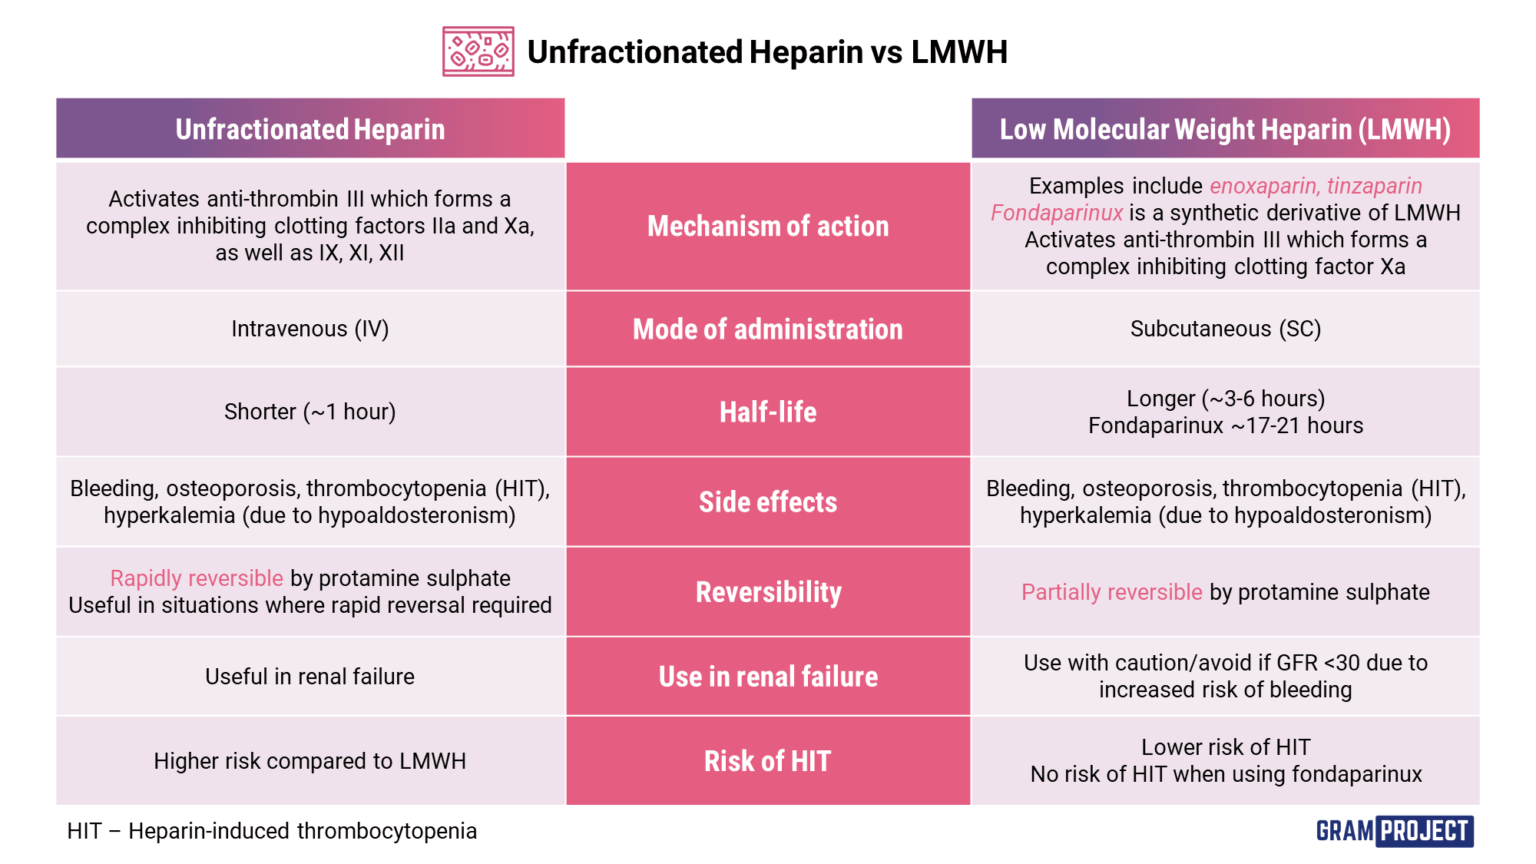 Table of comparison between unfractionated heparin and low molecular-weight heparin